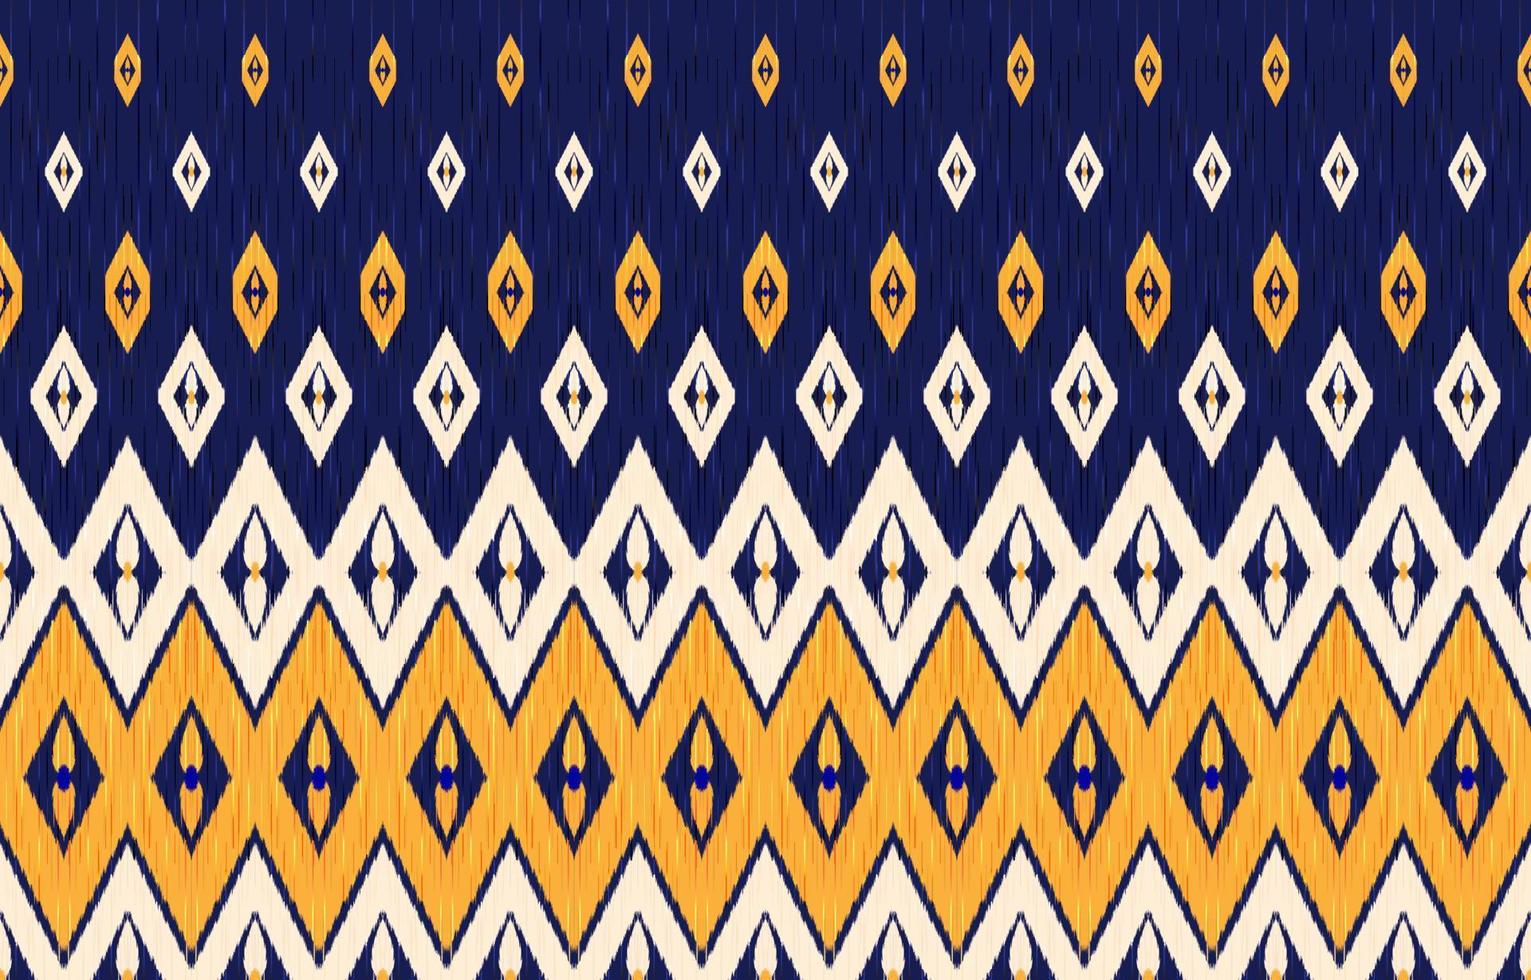 ikat etnisch patroon. donker blauw, oranje en geel kleuren. traditioneel kleding stof in tribal kalkoen Afrikaanse Indisch traditioneel. etnisch meetkundig kleding stof textiel vector illustratie borduurwerk stijl.